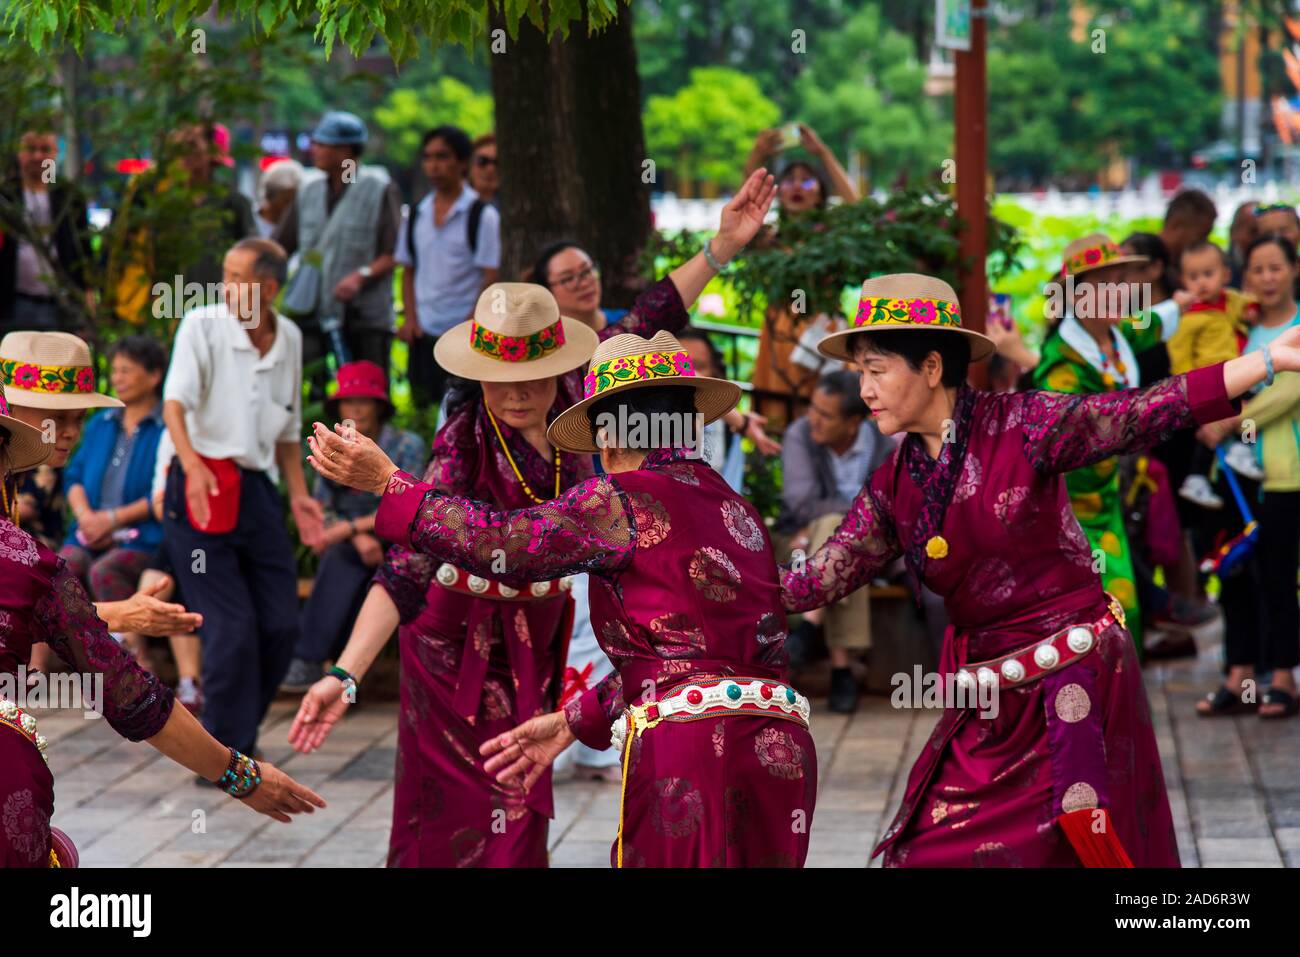 Kunming, China - 12 de julio de 2019: El pueblo chino bailando en la plaza pública en el parque vistiendo ropa de minorías étnicas en Kunming, Provincia de Yunnan Foto de stock